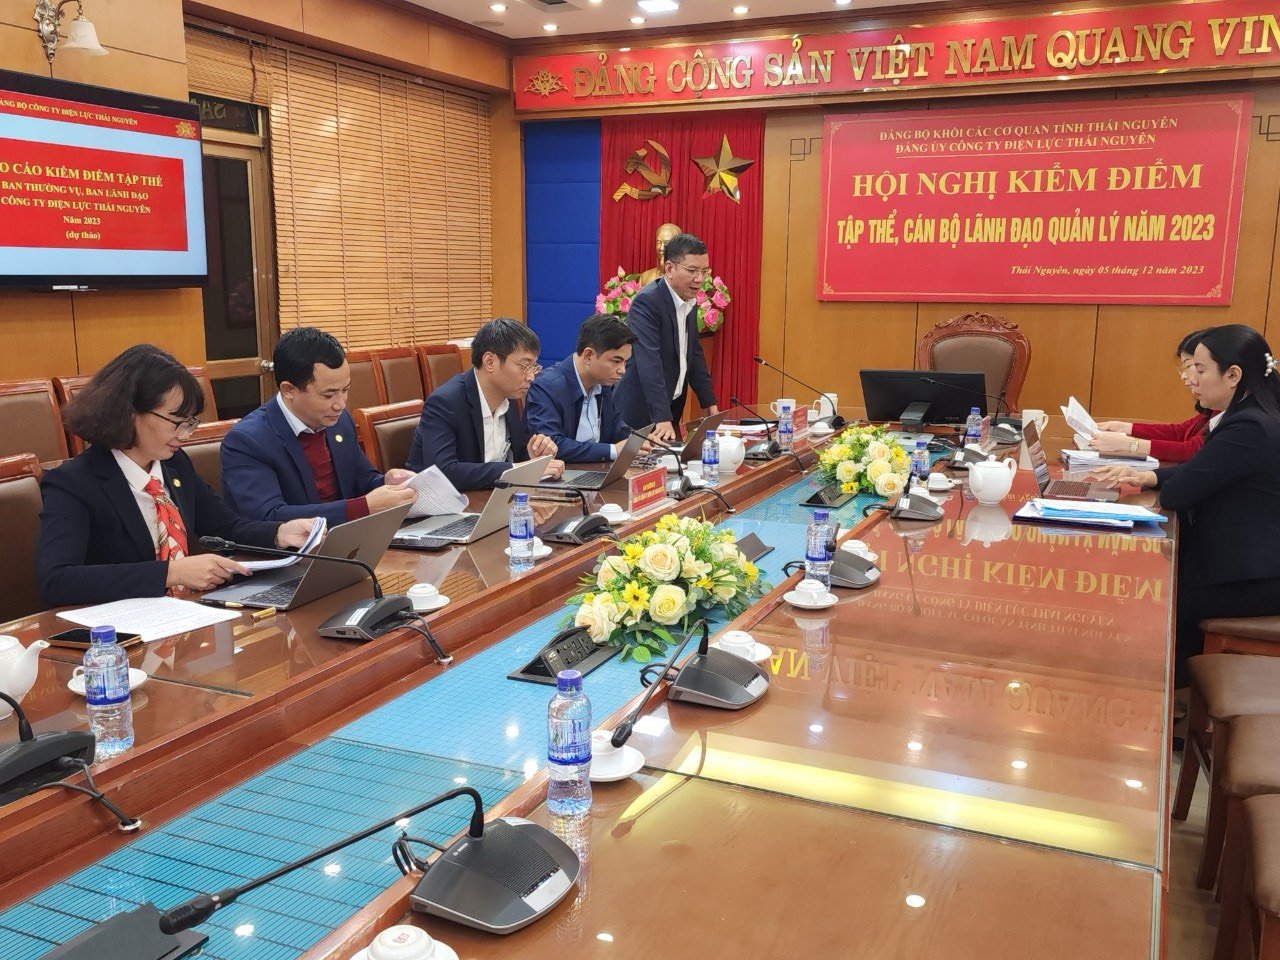 Đảng bộ Công ty Điện lực Thái Nguyên tổ chức Hội nghị kiểm điểm Tập thể, cá nhân cán bộ lãnh đạo quản lý năm 2024